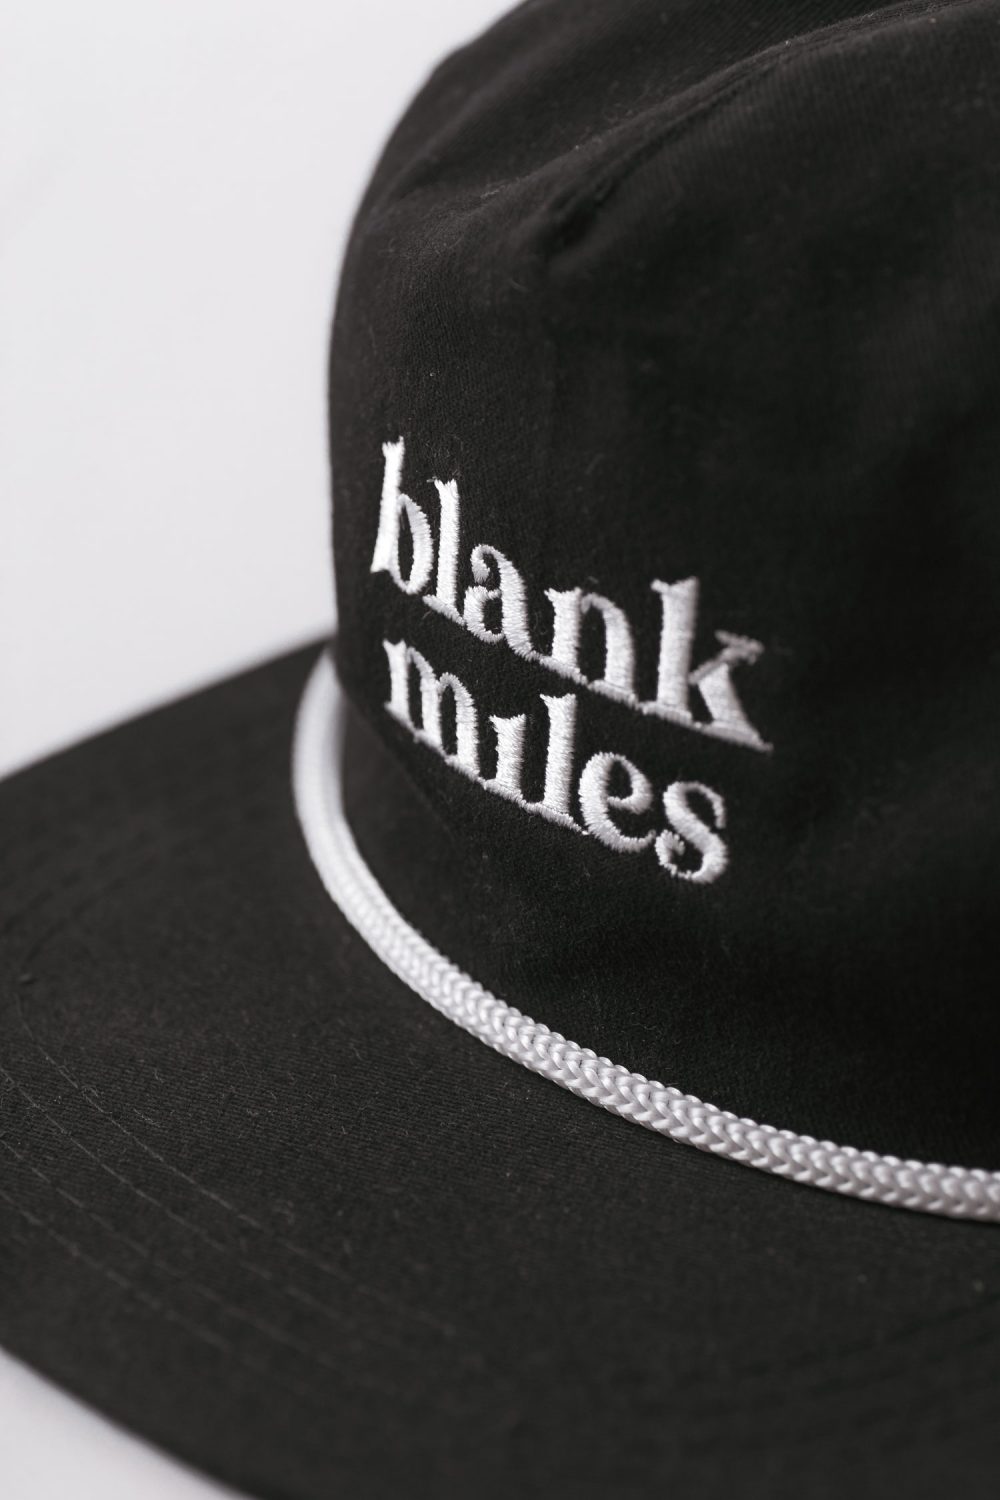 blank miles cap black detail logo